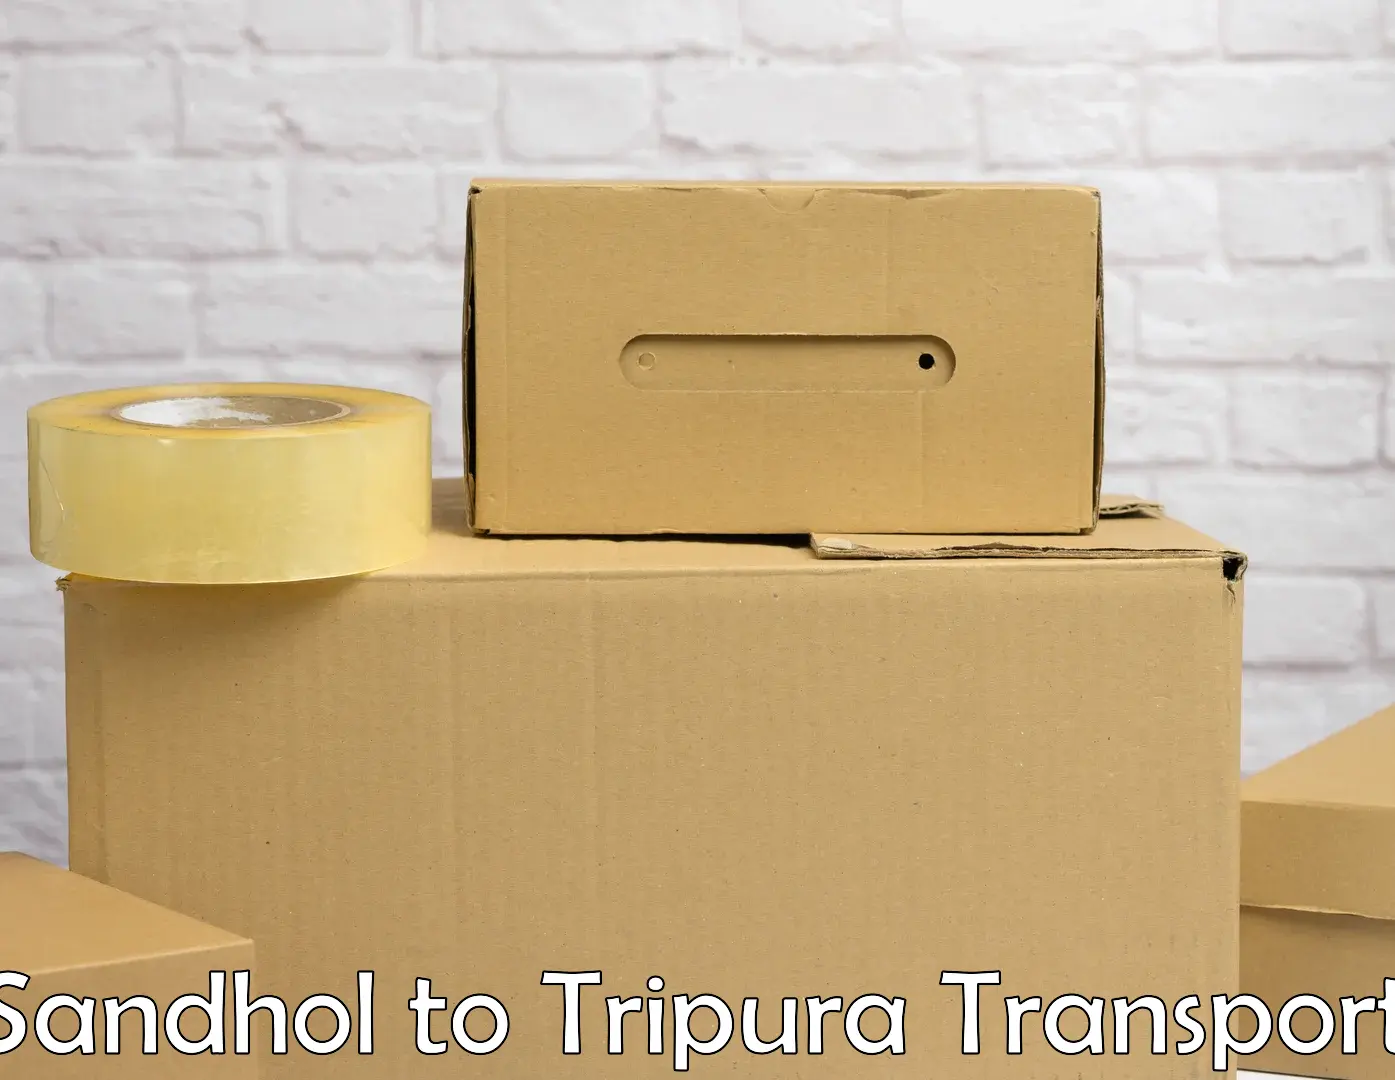 Road transport online services Sandhol to Tripura